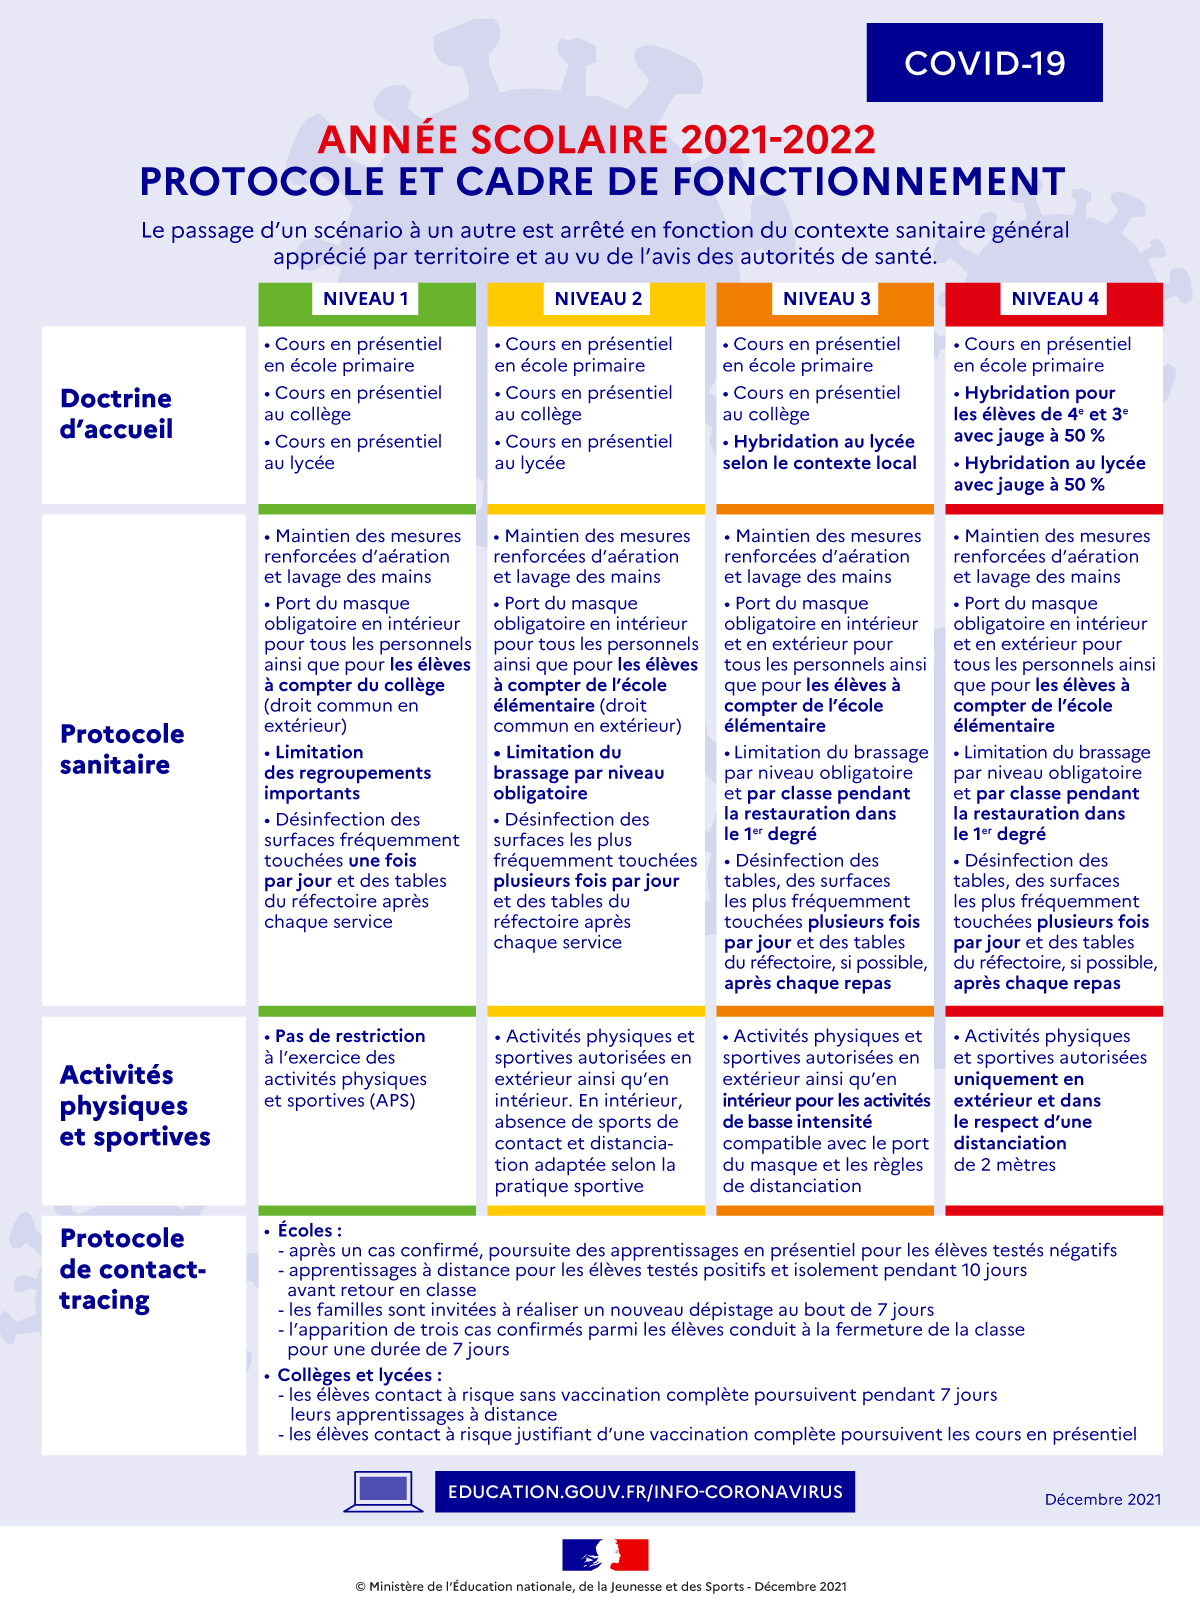 Protocole et cadre de fonctionnement COVID - année scolaire 2021/2022